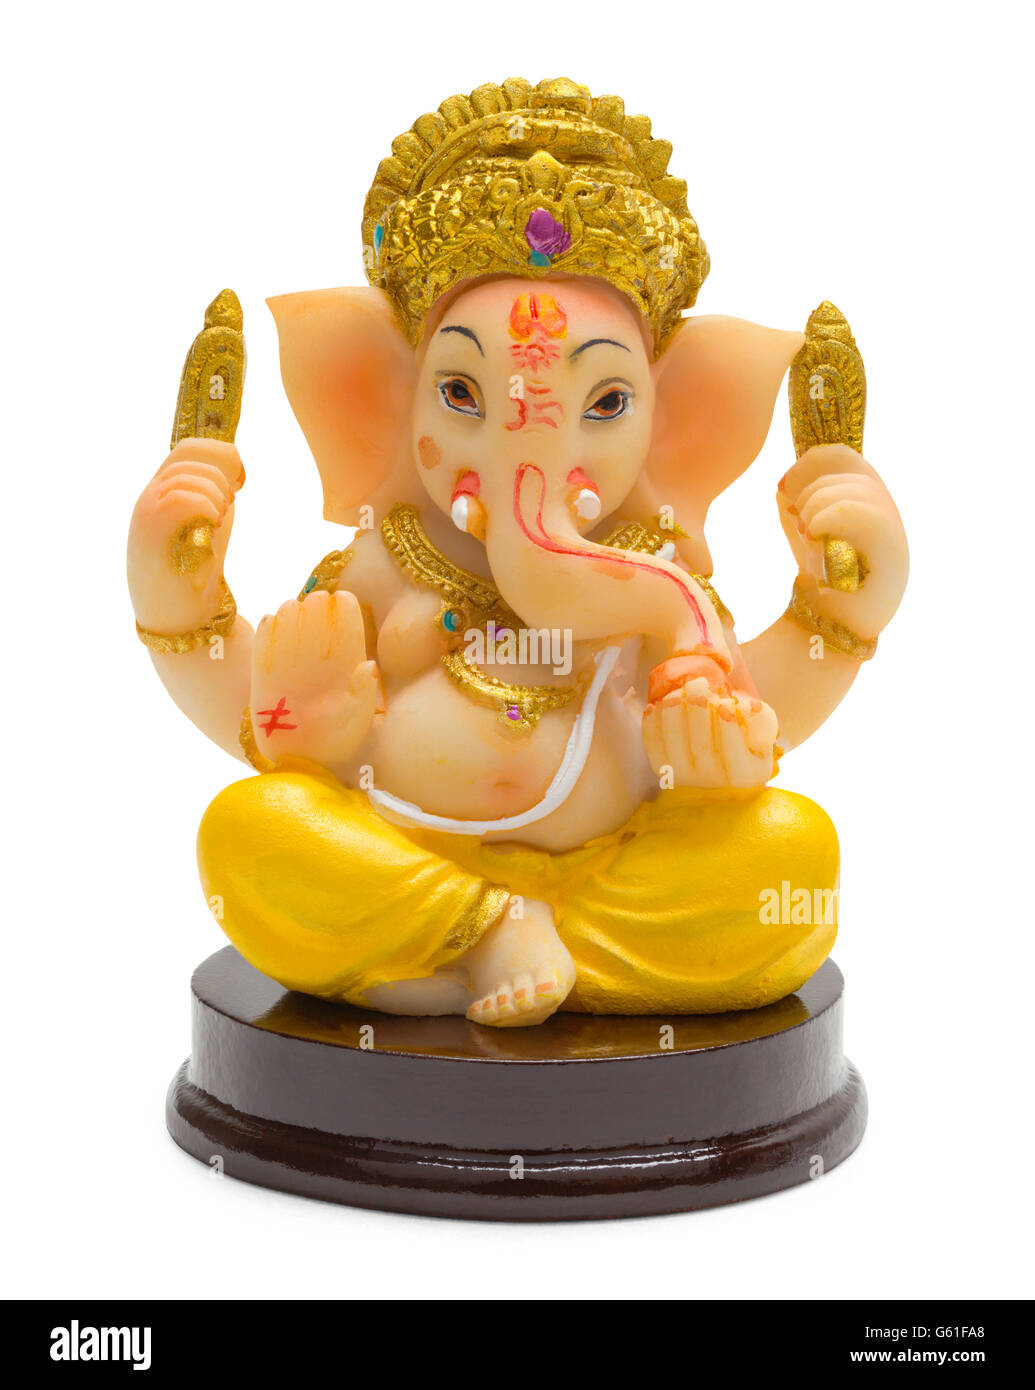 India Elephant God Ganesh Isolated on White Background Stock Photo - Alamy